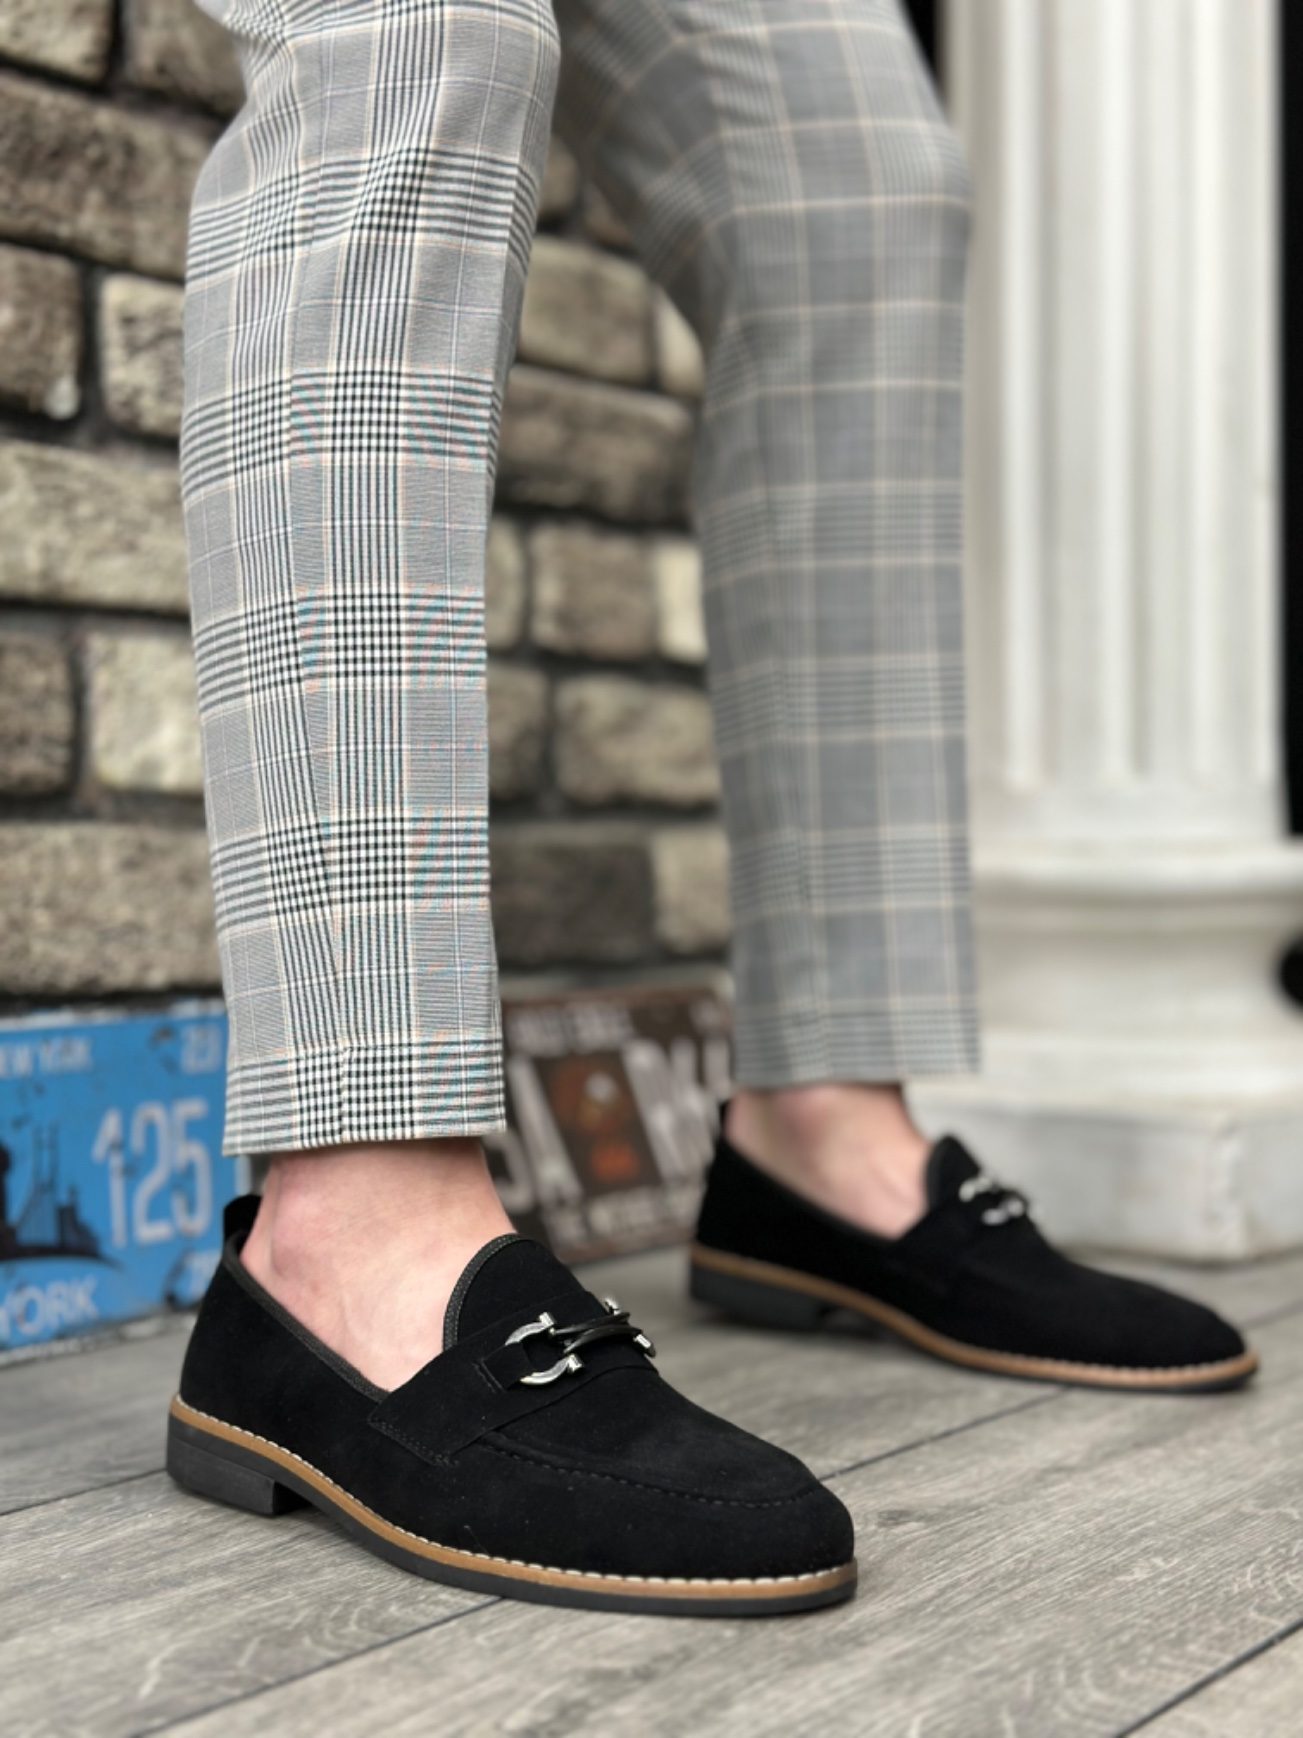 CLZ946 Süet Püsküllü Corcik Siyah Çengel Tokalı Klasik Erkek Ayakkabısı